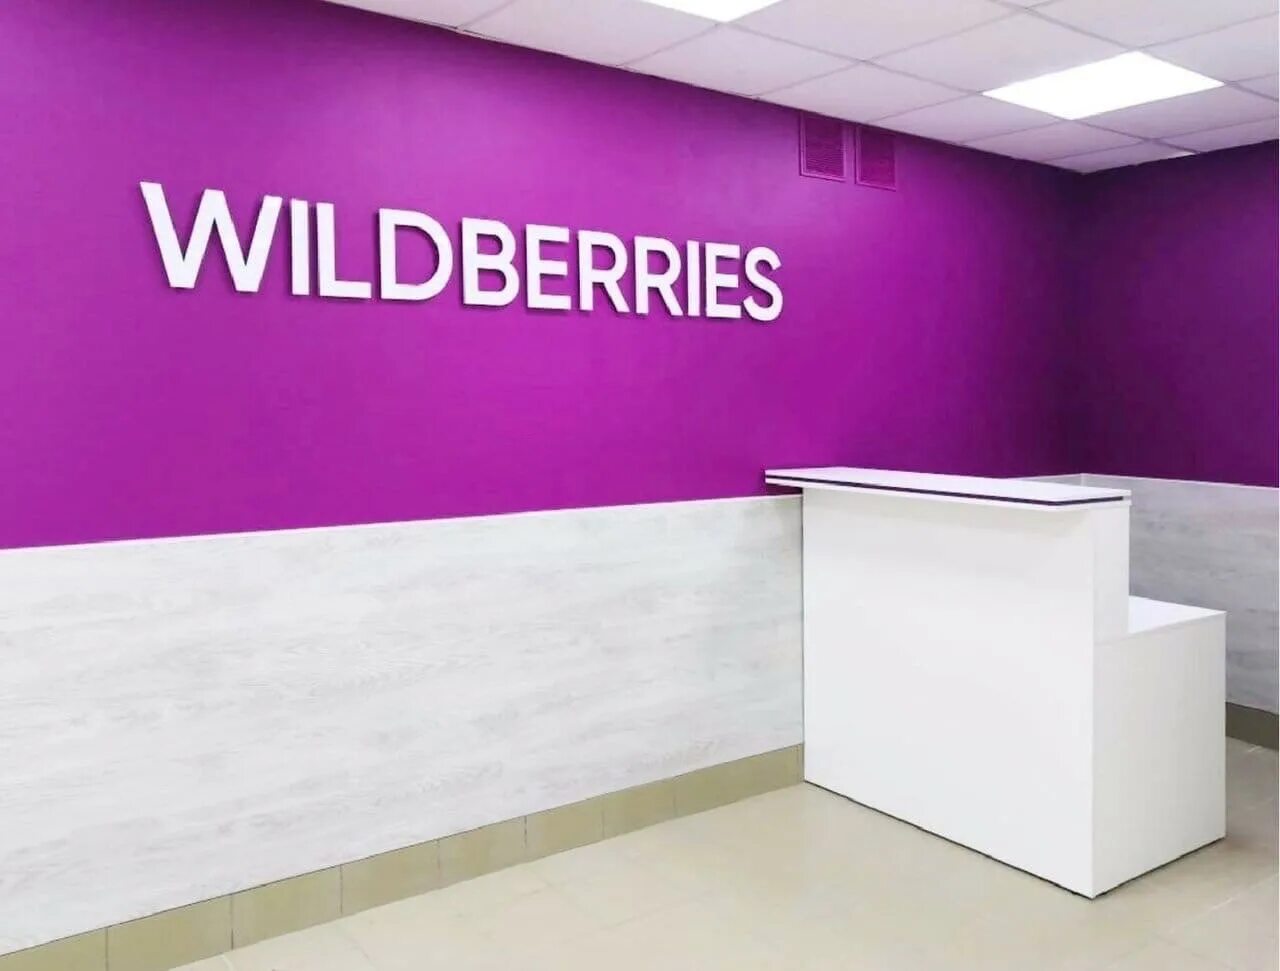 Wildberries. Пункт Wildberries. Wildberries логотип. Wildberries Фоновое изображение. Валдберис бизнес